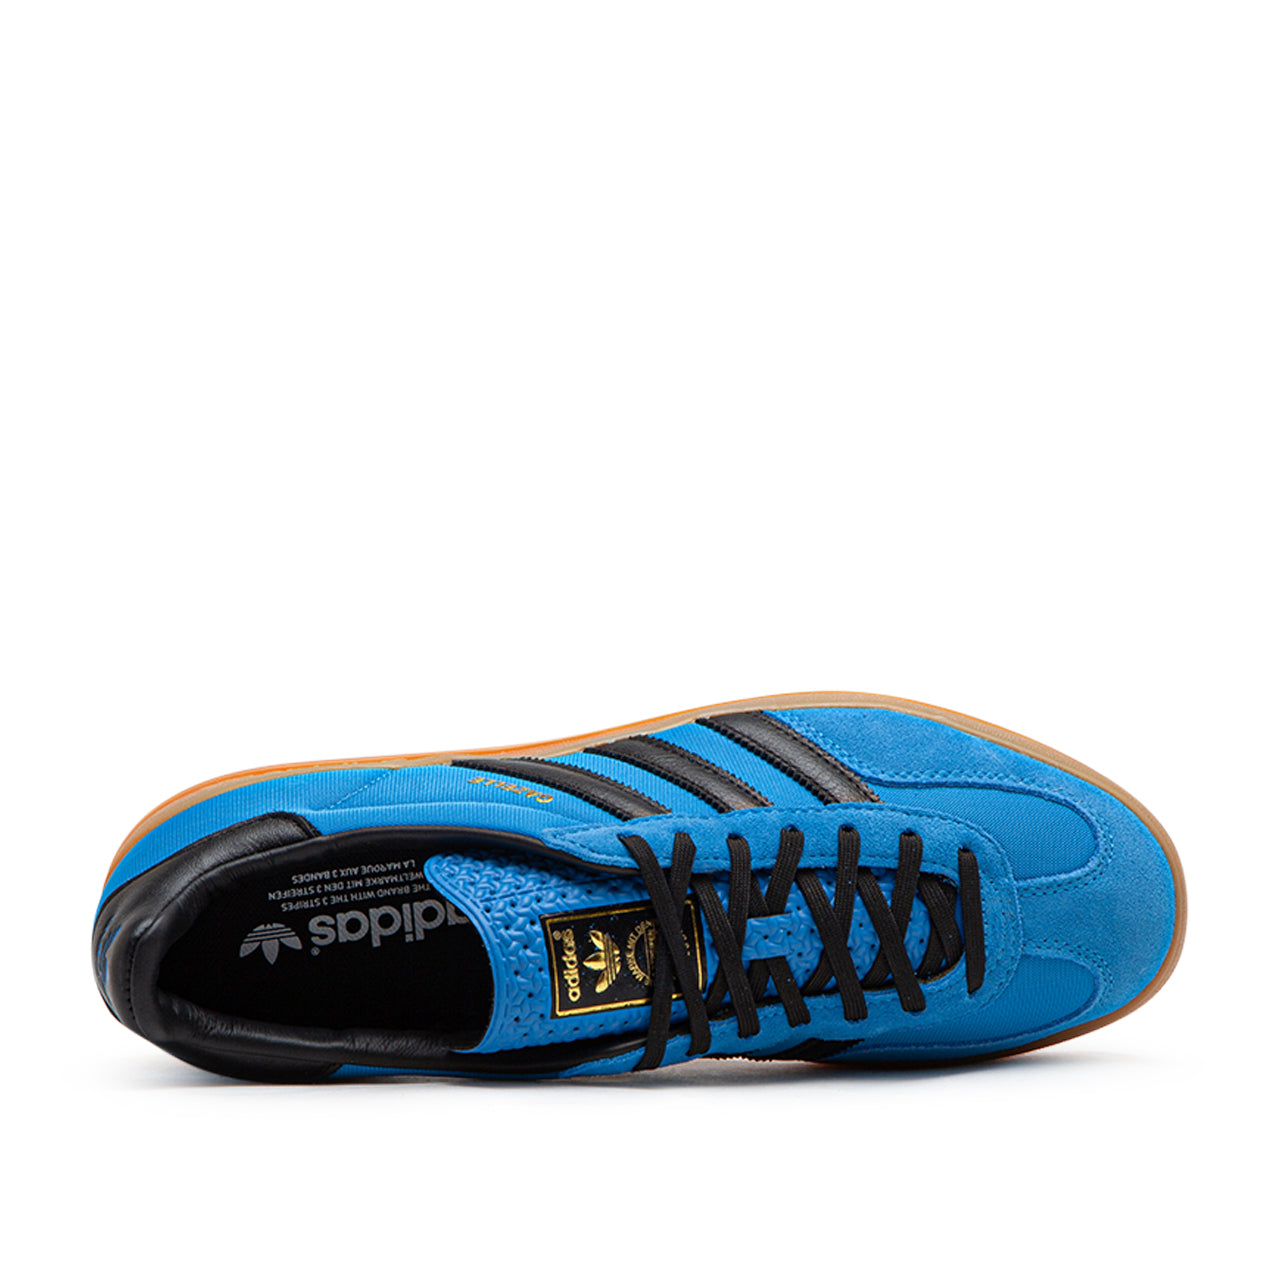 adidas Gazelle Indoor (Blau / Schwarz)  - Allike Store